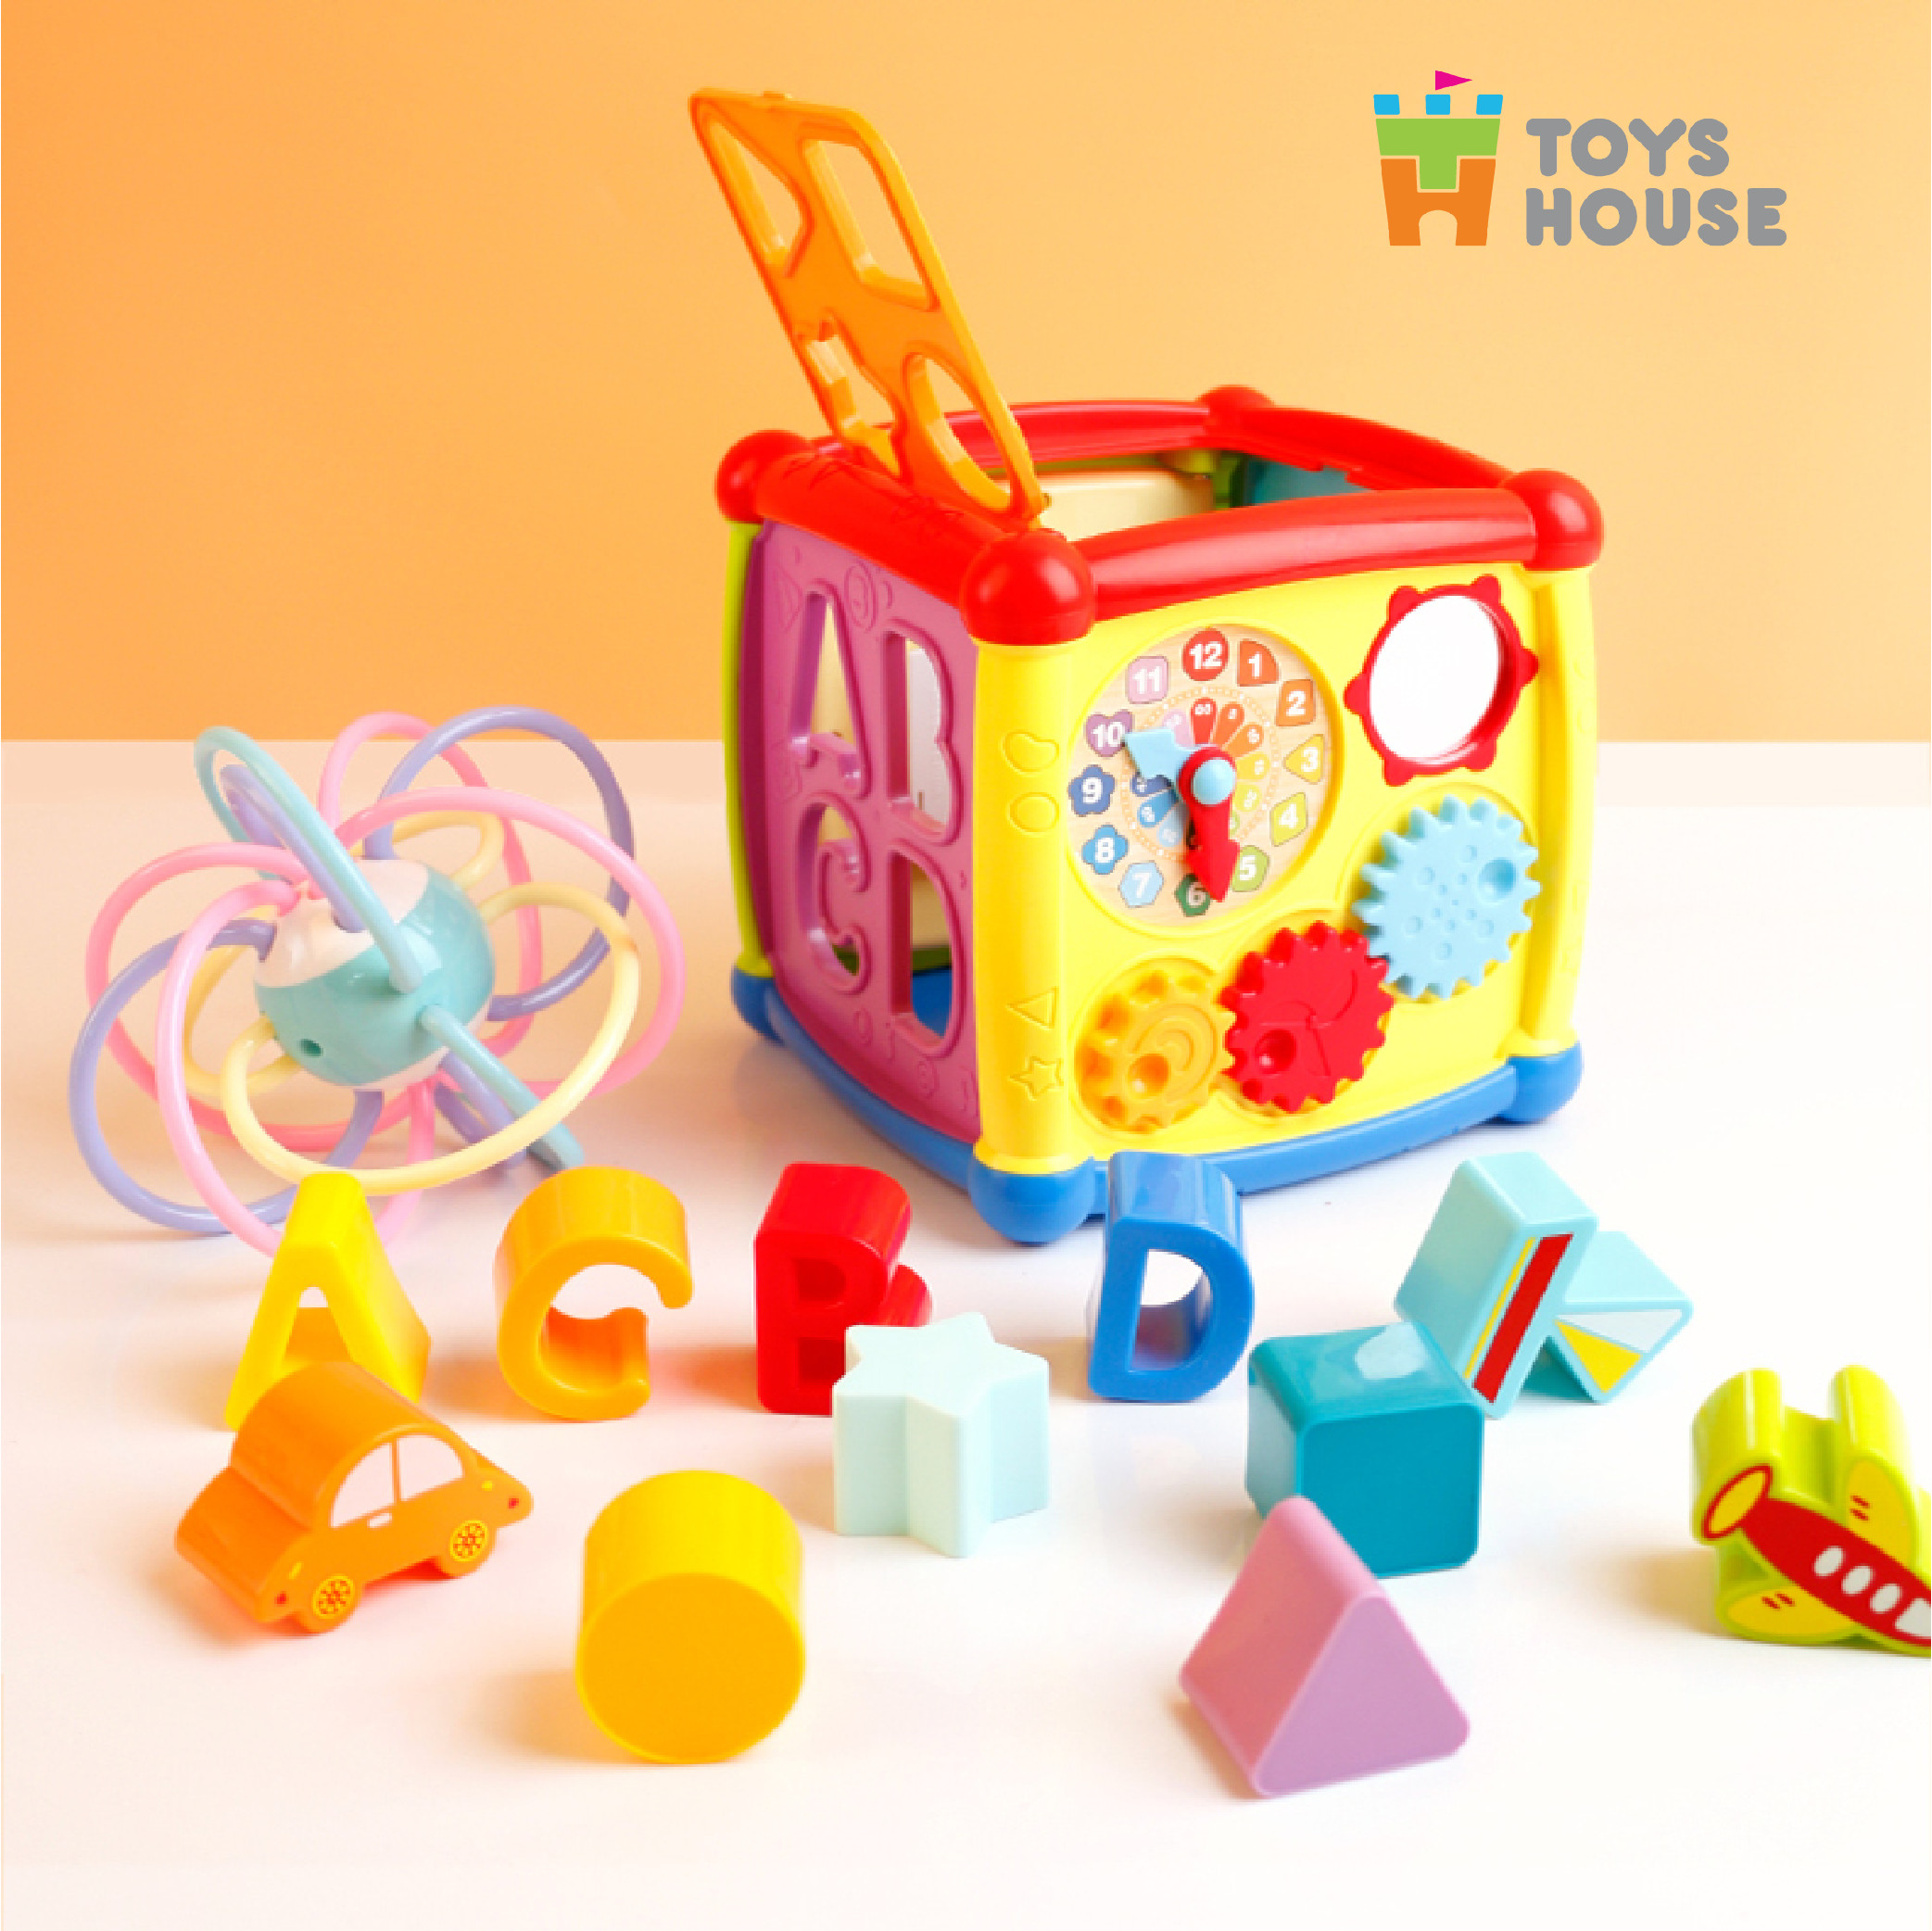 Hộp lập phương thả khối có đàn nhạc - đồ chơi giáo dục cho bé ToysHouse HE0520